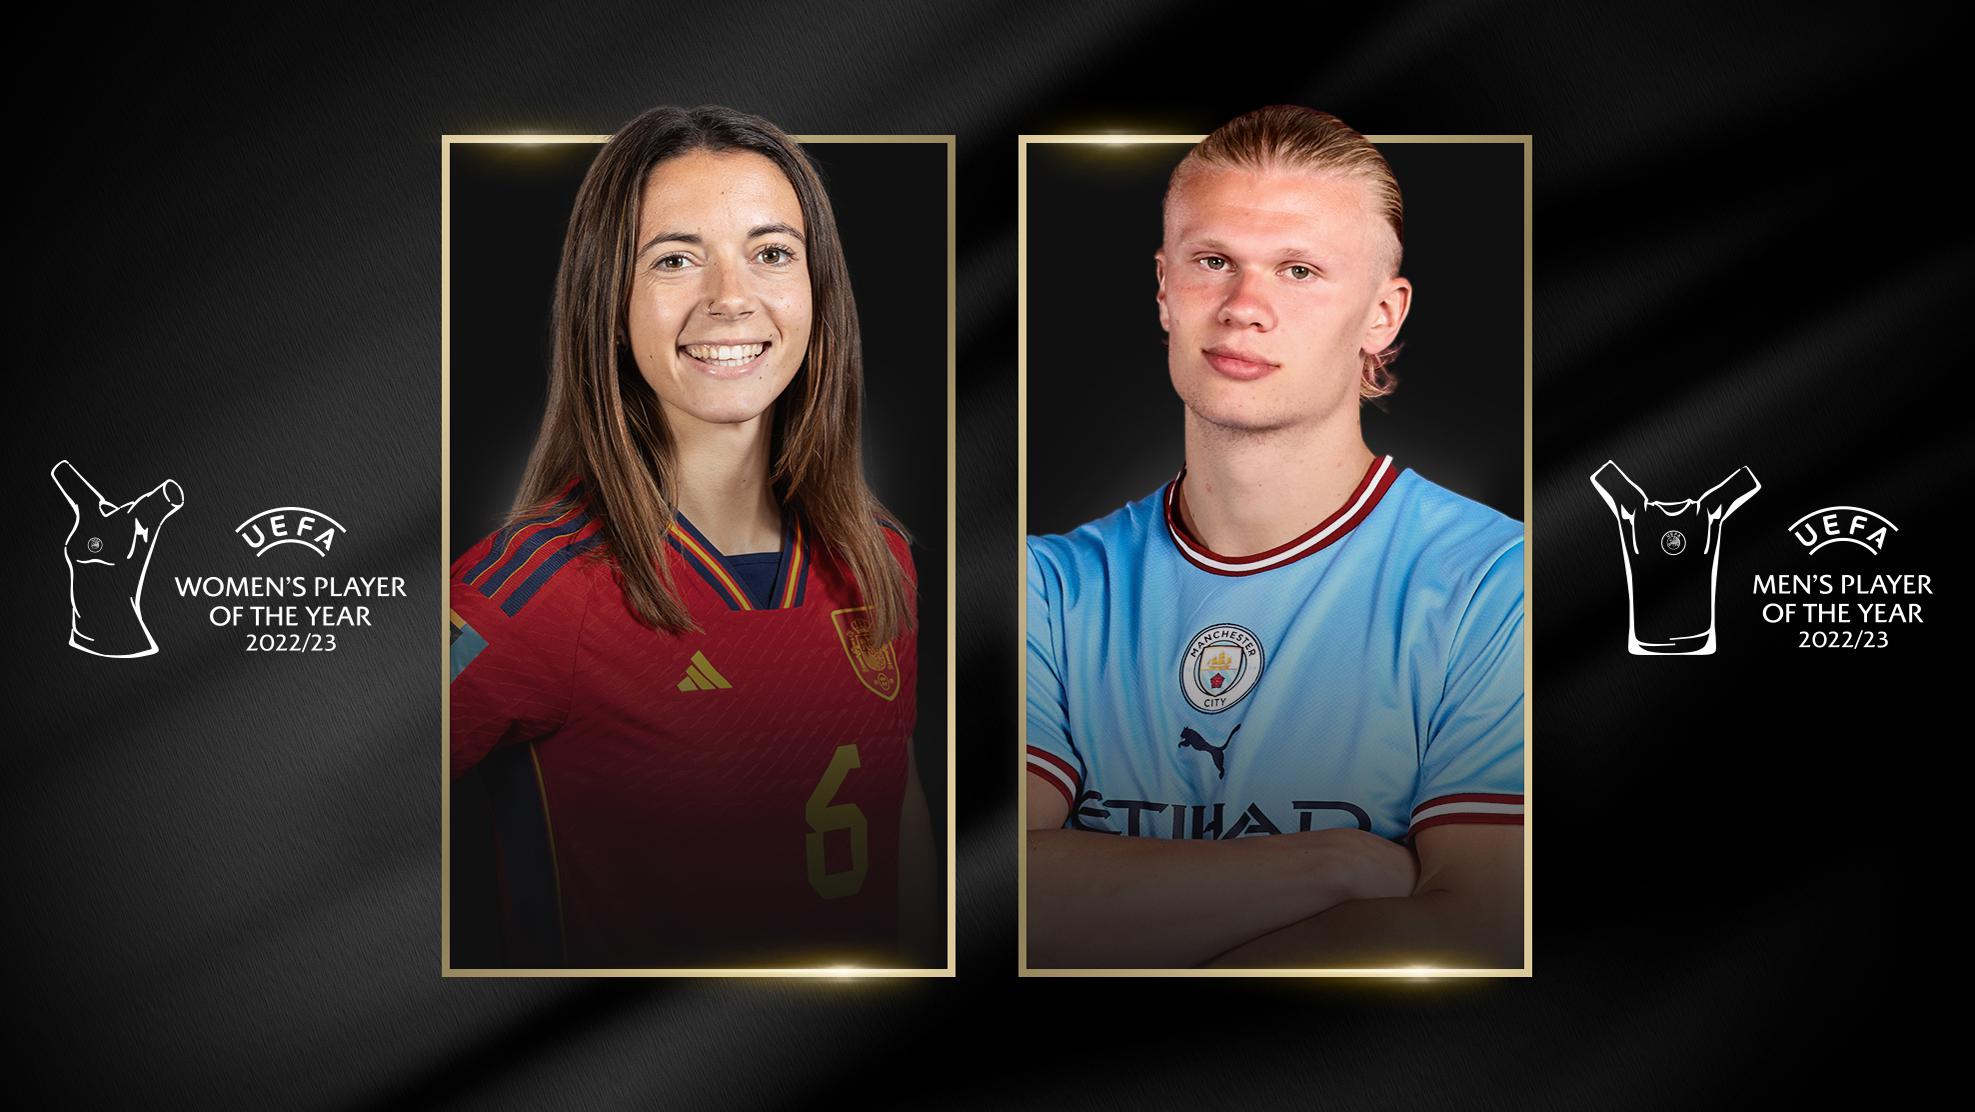 Uefa revela 3 finalistas ao prêmio de melhor jogador da Europa - GMC Online